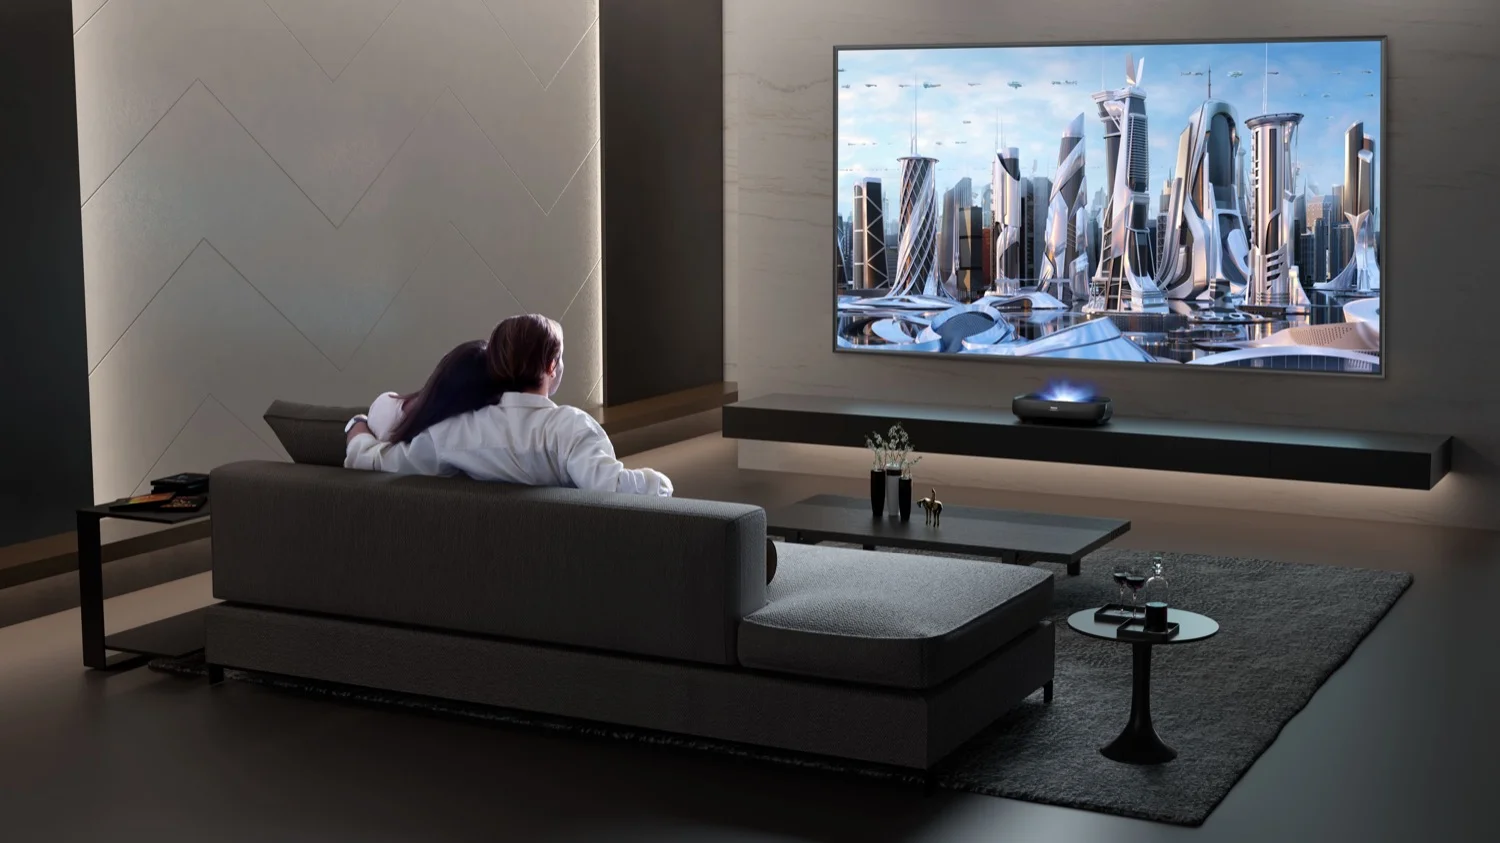 El televisor láser reducirá el cansancio visual